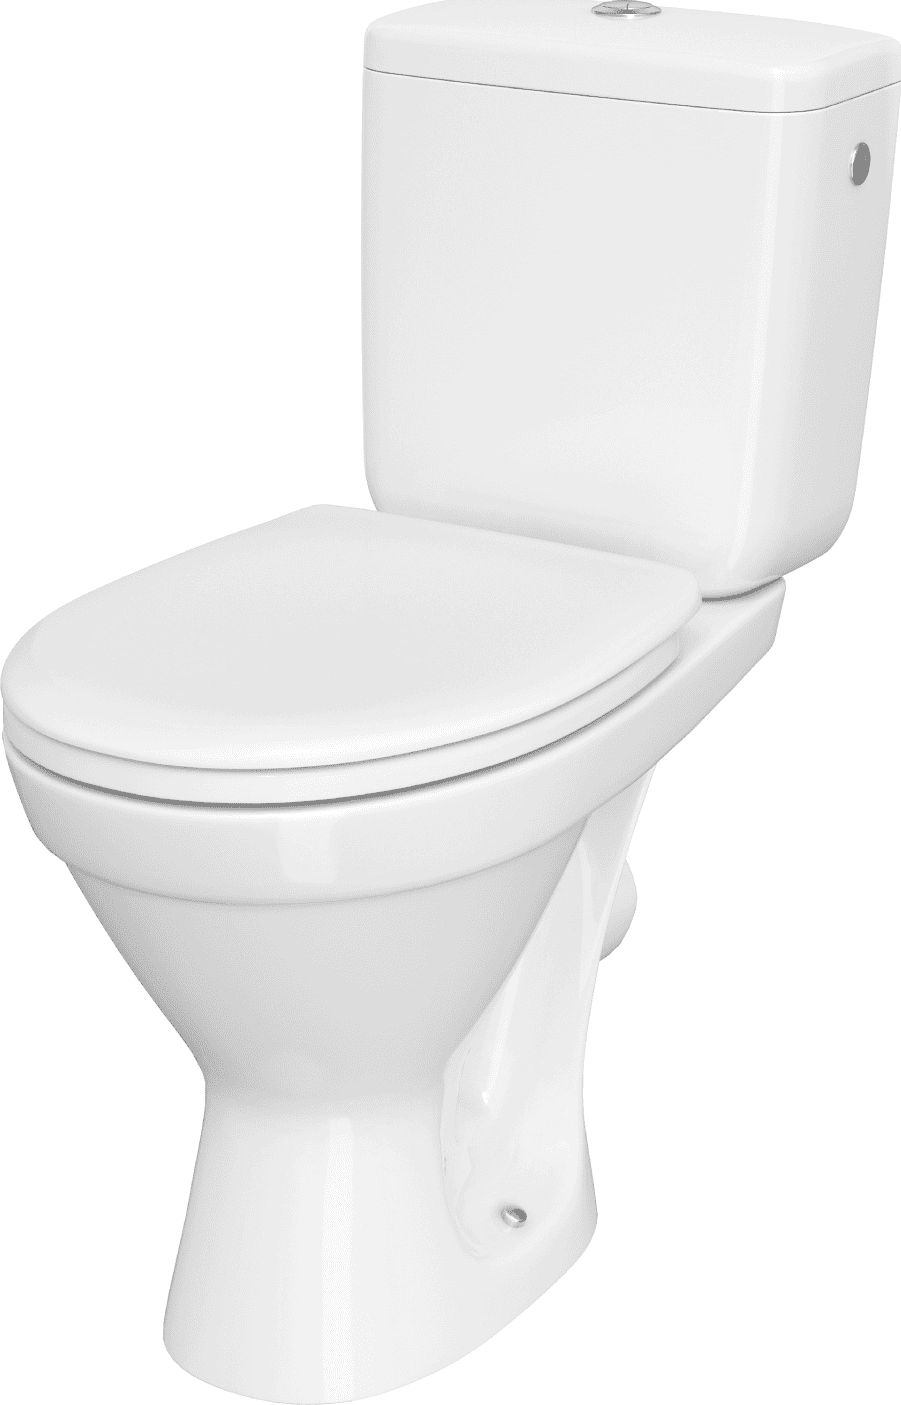 Zestaw kompaktowy WC Cersanit Cersania ll 65.5 cm cm bialy (K11-2339) K11-2339 (5902115795732)